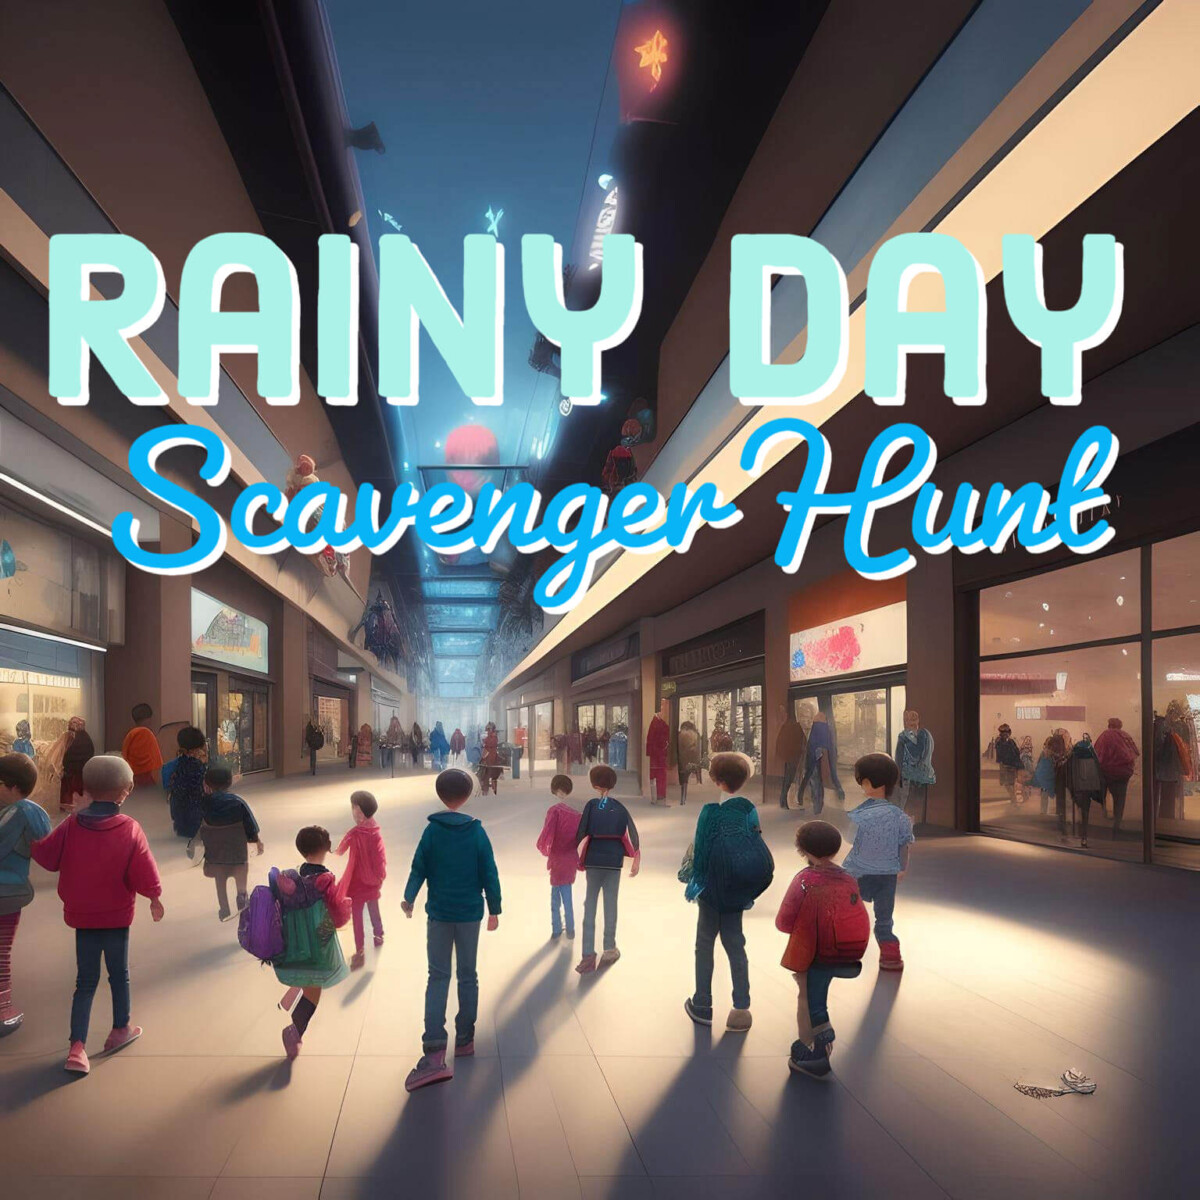 Rainy Day Kid Activity – Photo Scavenger Hunt at the Mall